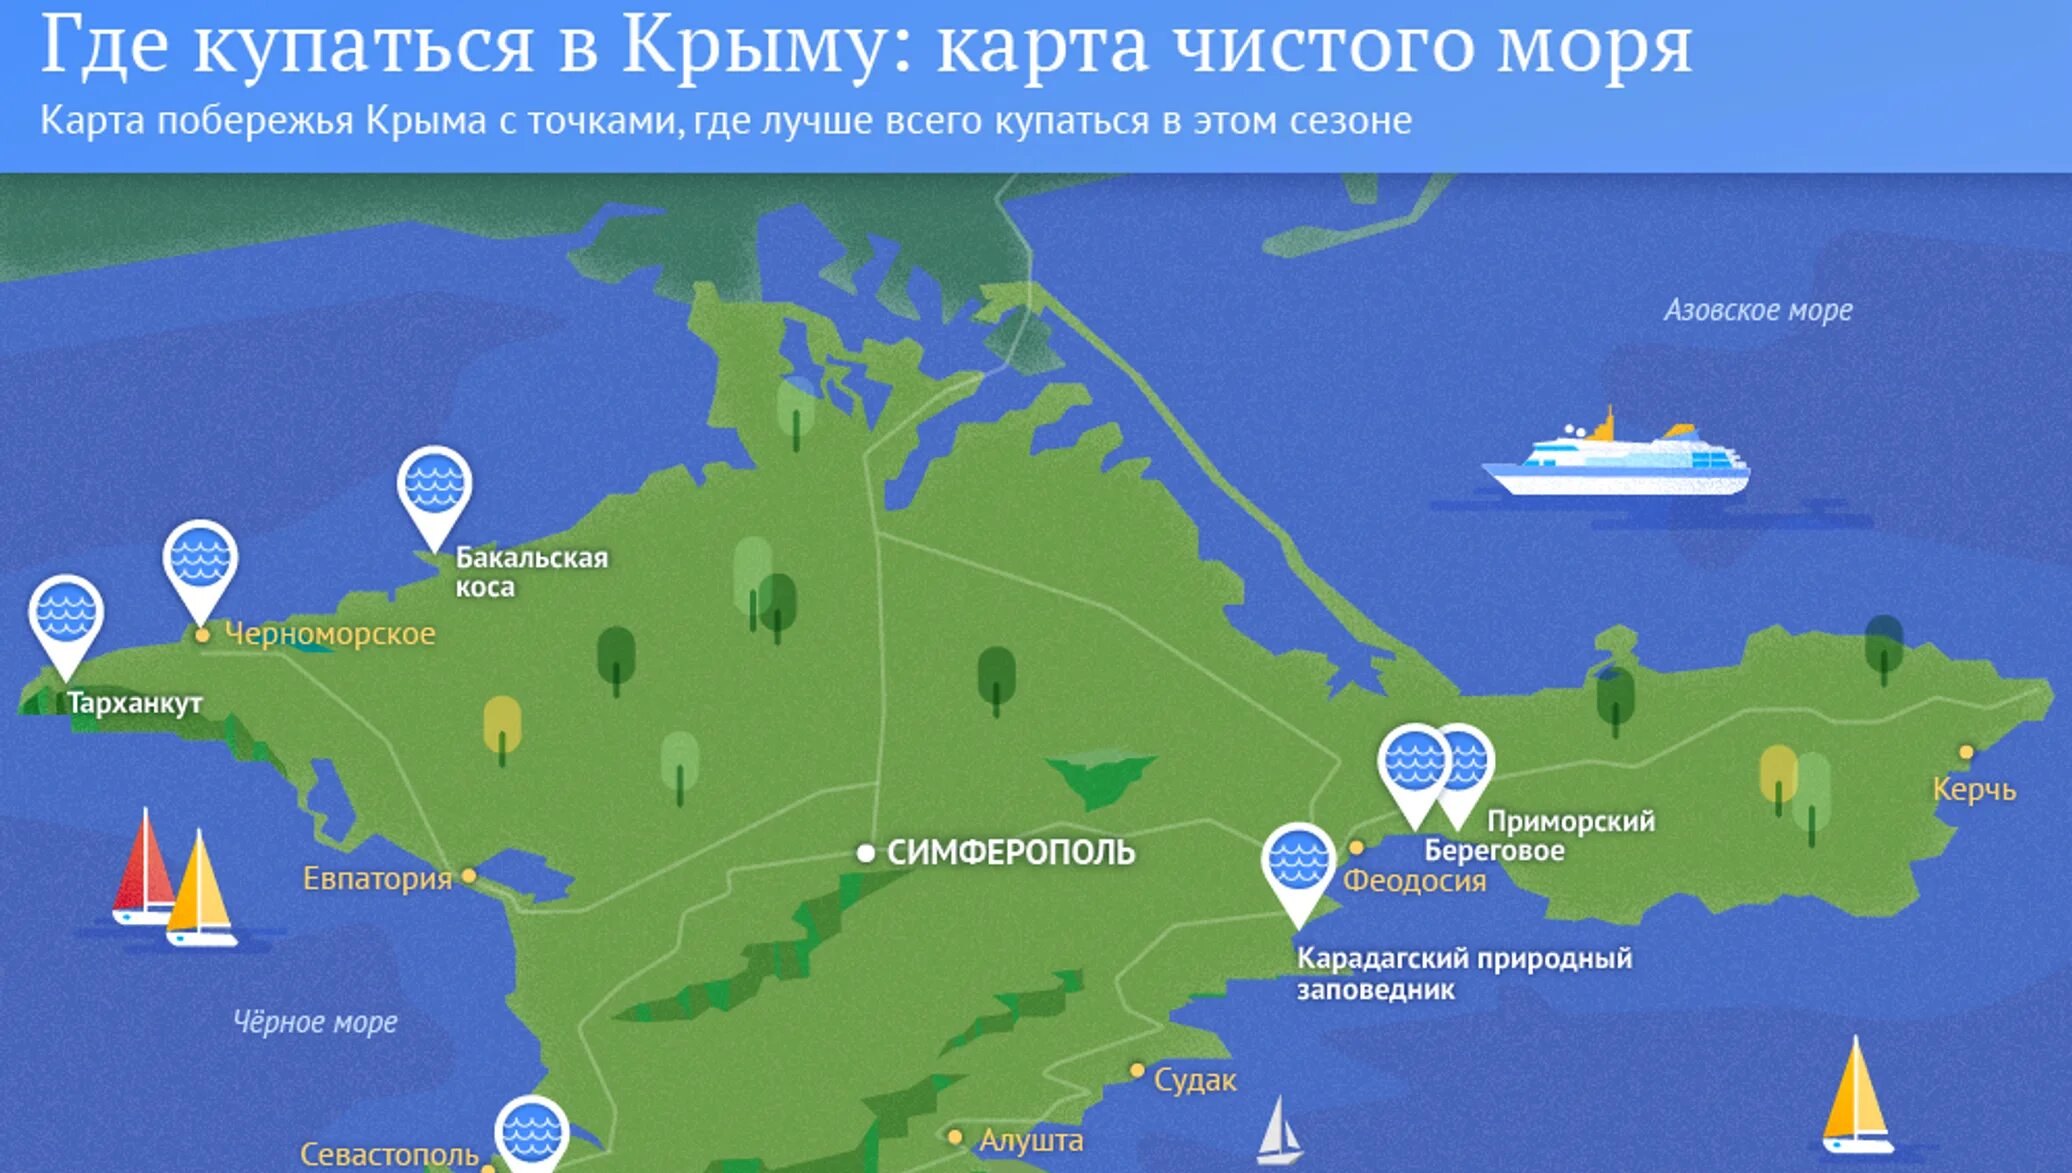 Карта чистоты моря в Крыму. Карта Крыма с пляжами. Азовское море курорты. Курортные зоны Крыма.